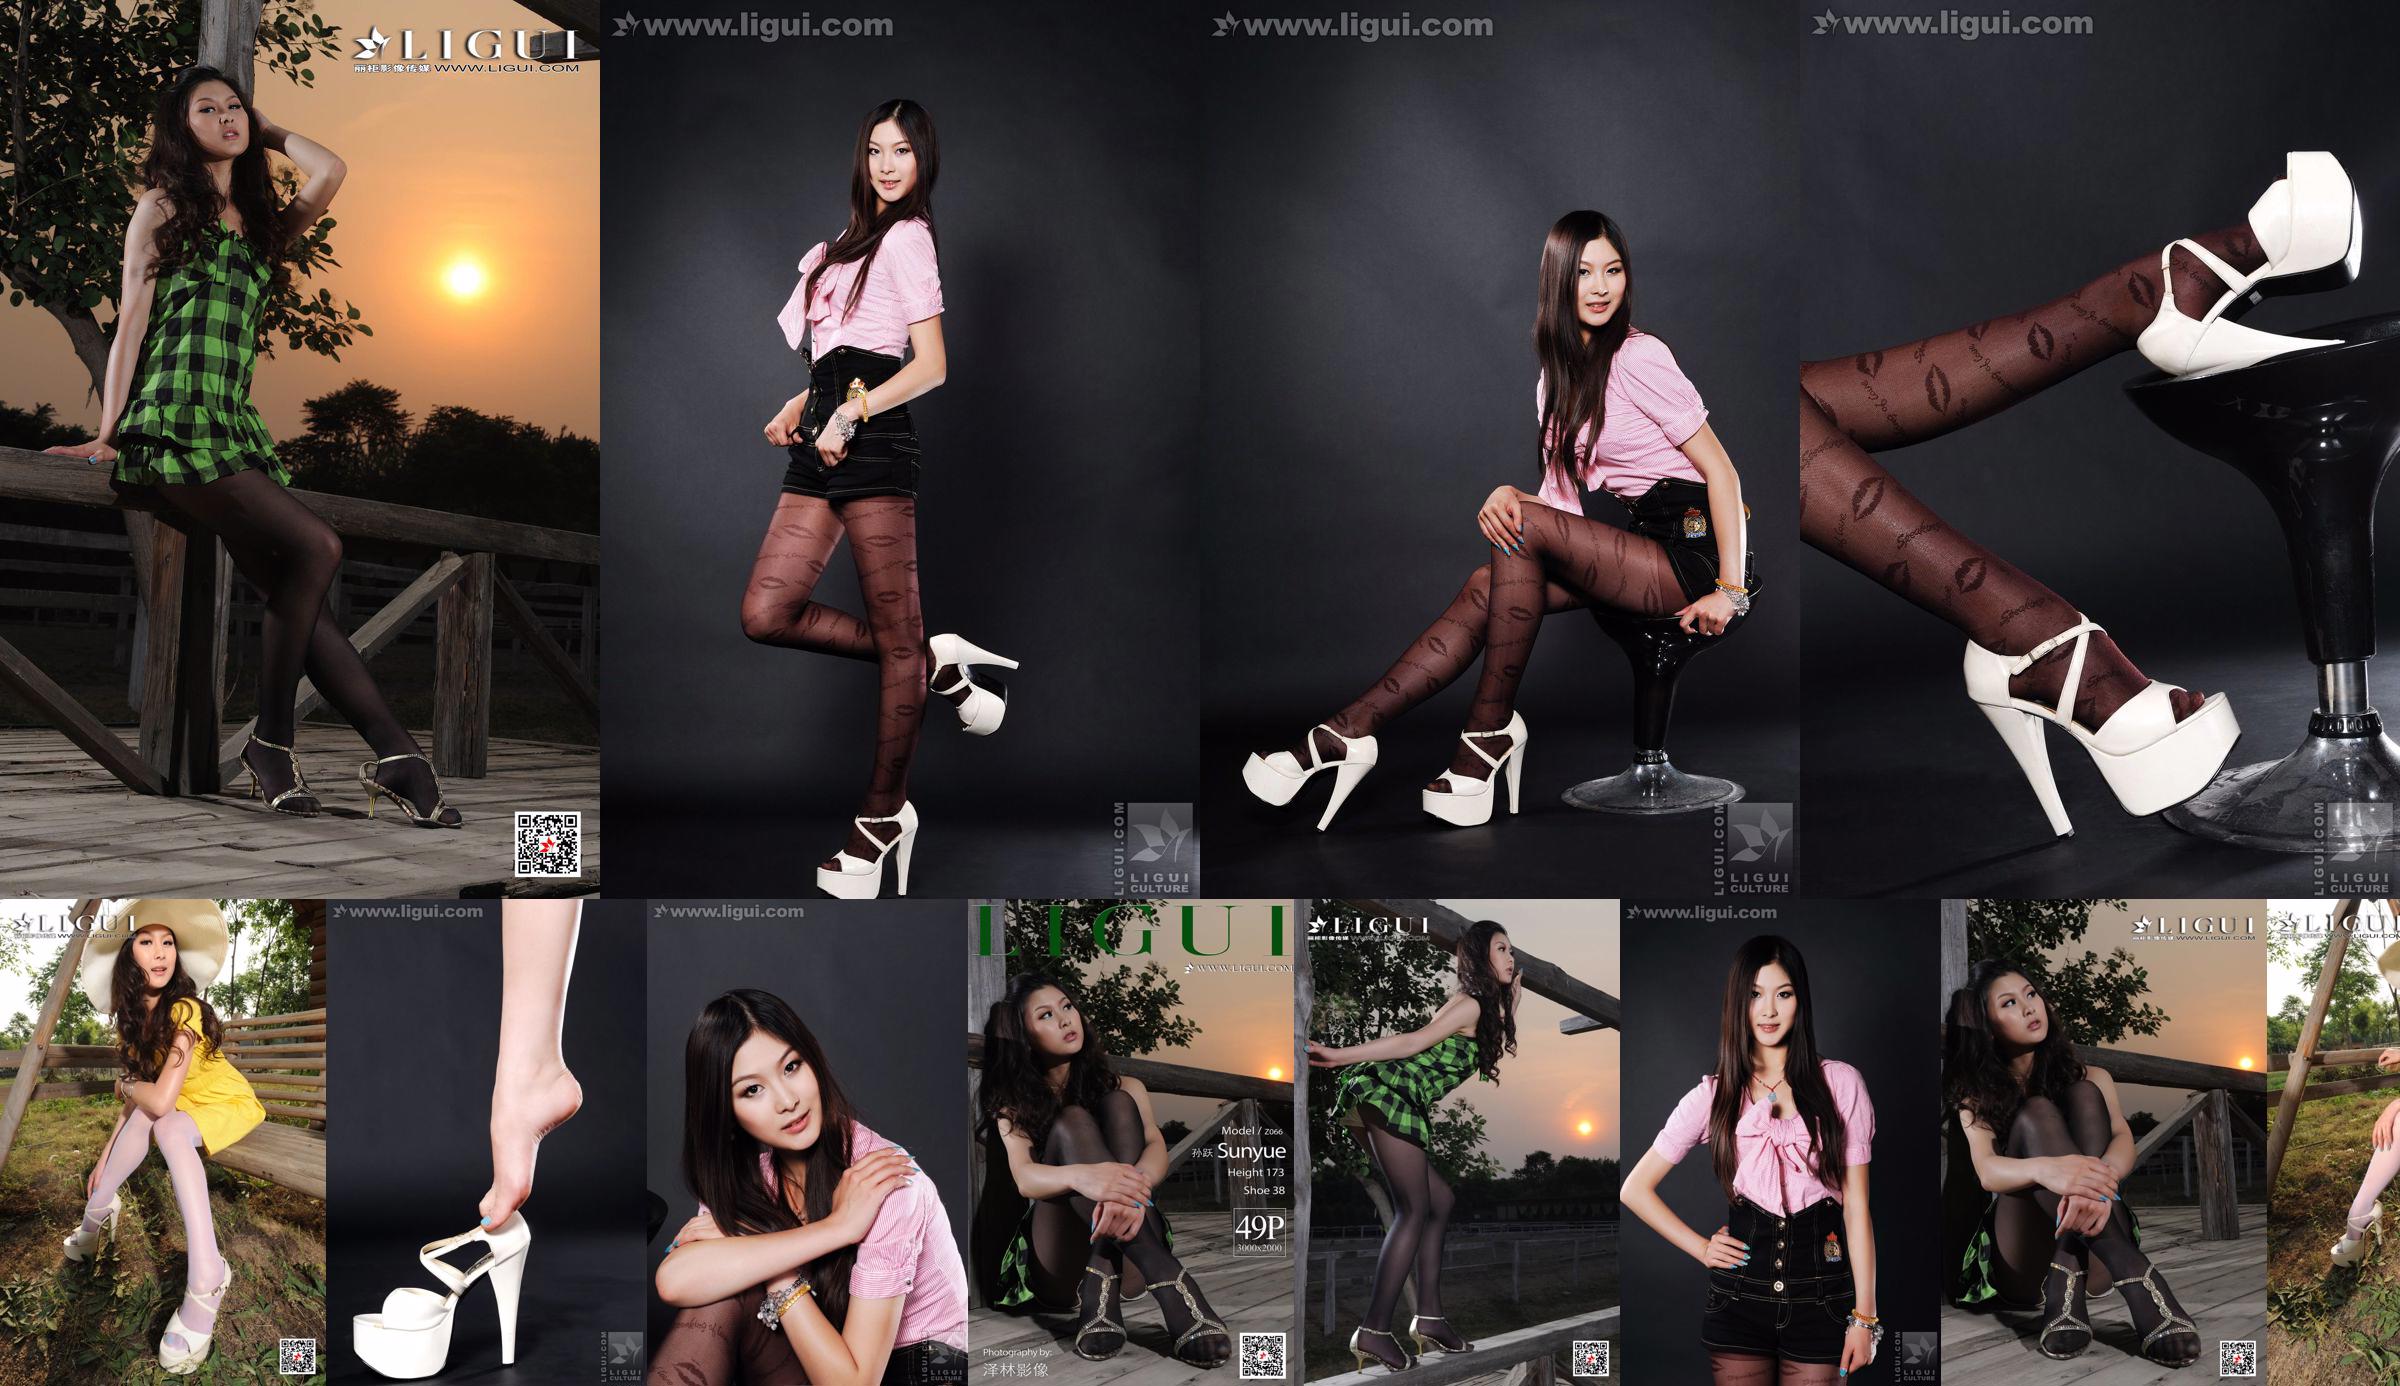 Người mẫu Sun Yue "Sexy and Glamorous Stockings" [丽 柜 LiGui] Ảnh Chân Dung Ngọc Bích và Chân Ngọc Xinh Đẹp No.f4a2e2 Trang 1